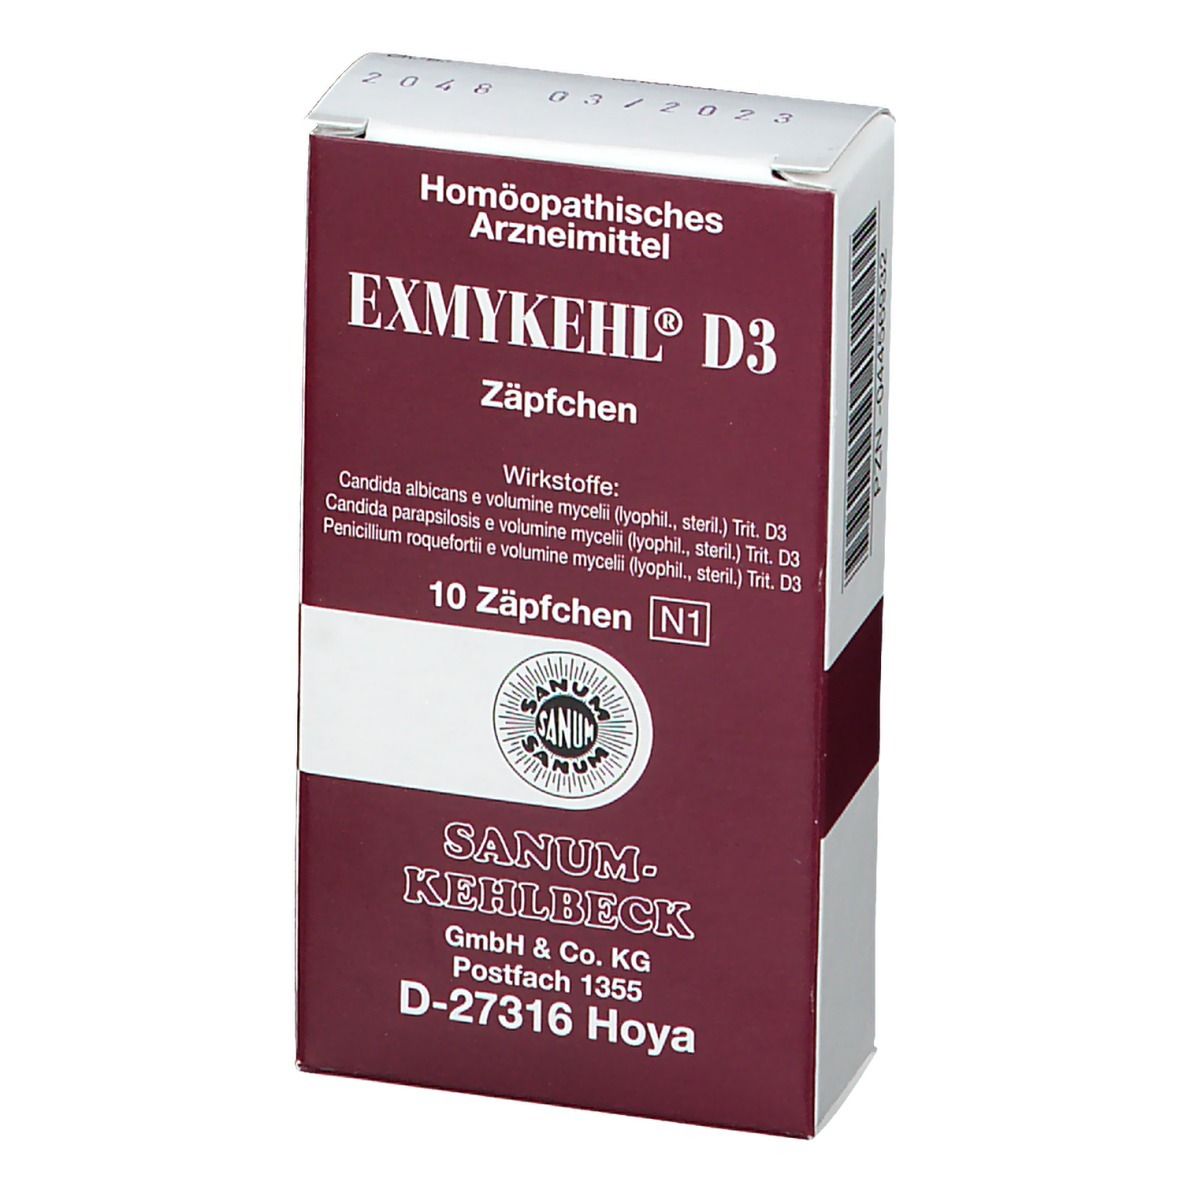 Exmykehl®  D3 Suppositorien